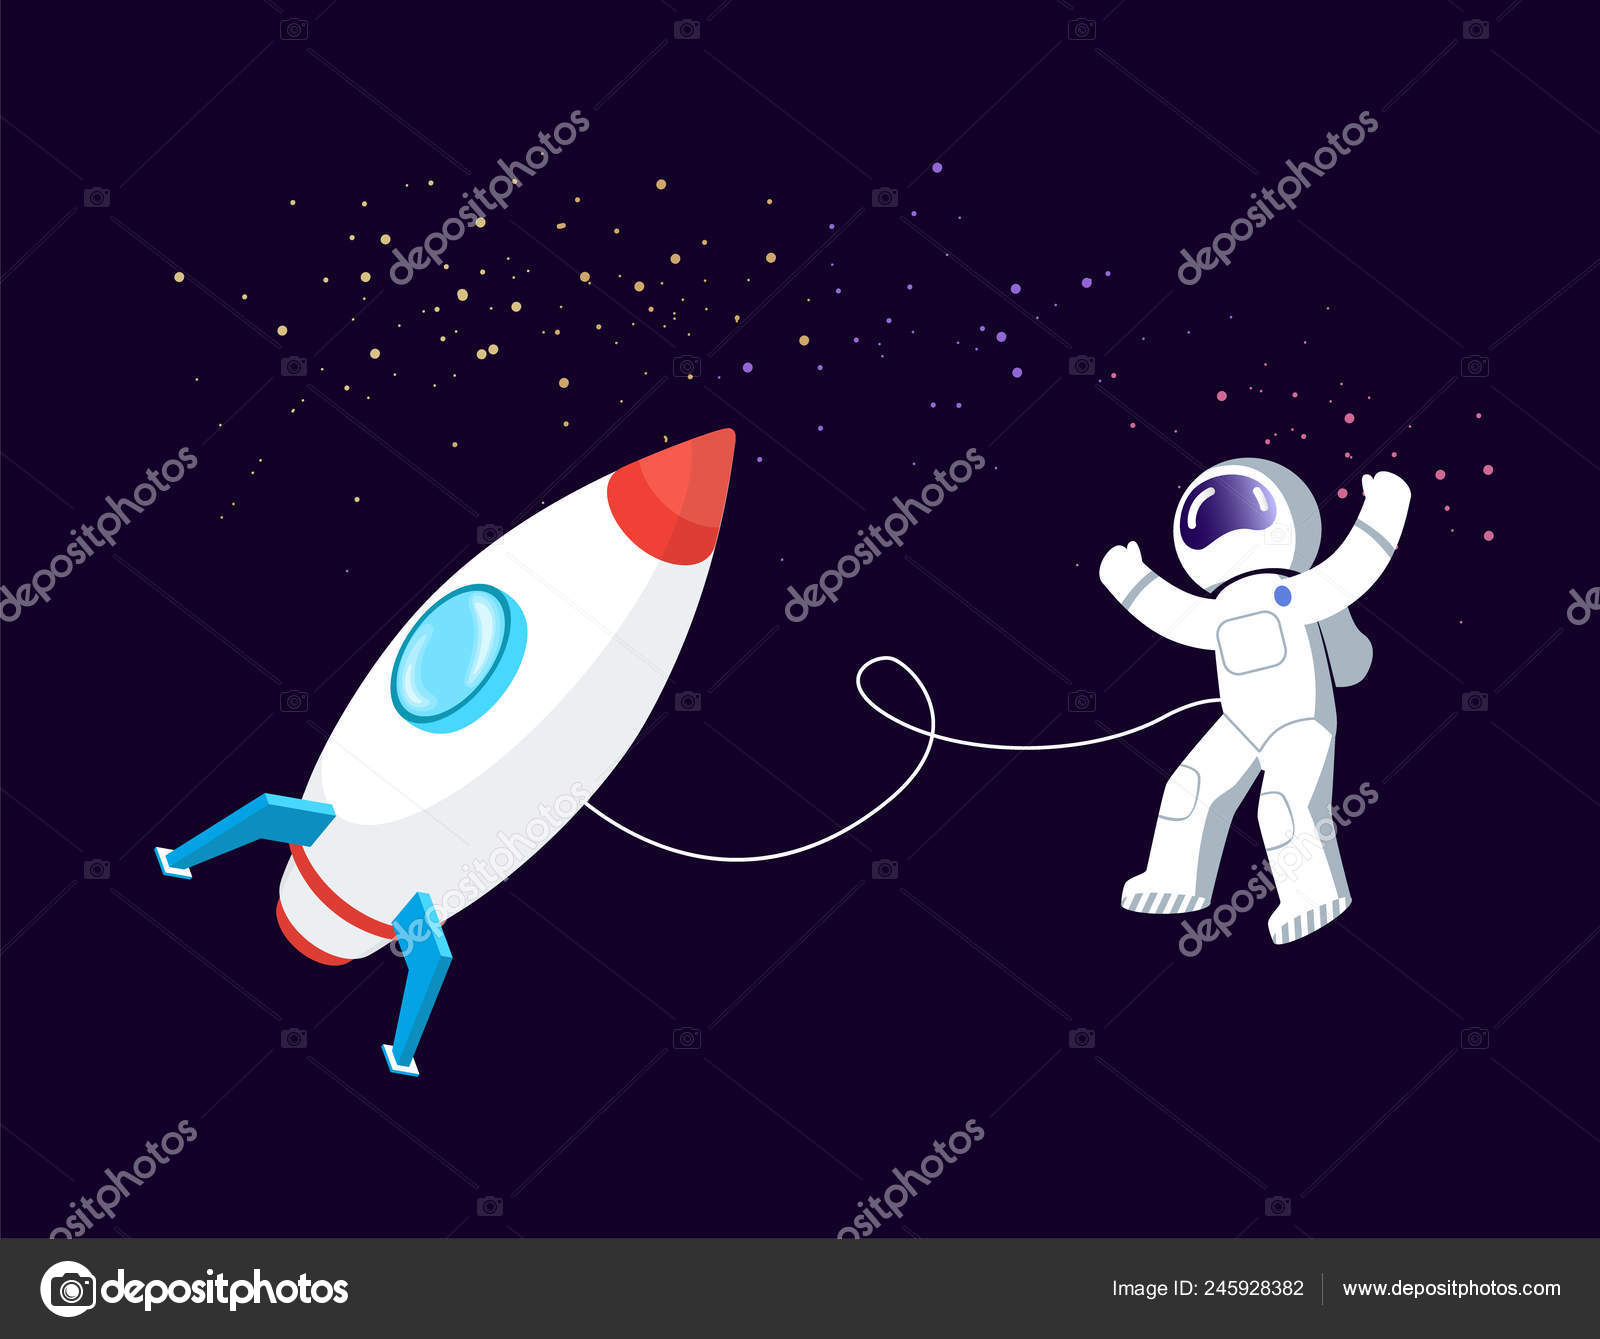 Enfant Heureux Explorant Dans L'espace Rocket Illustration de